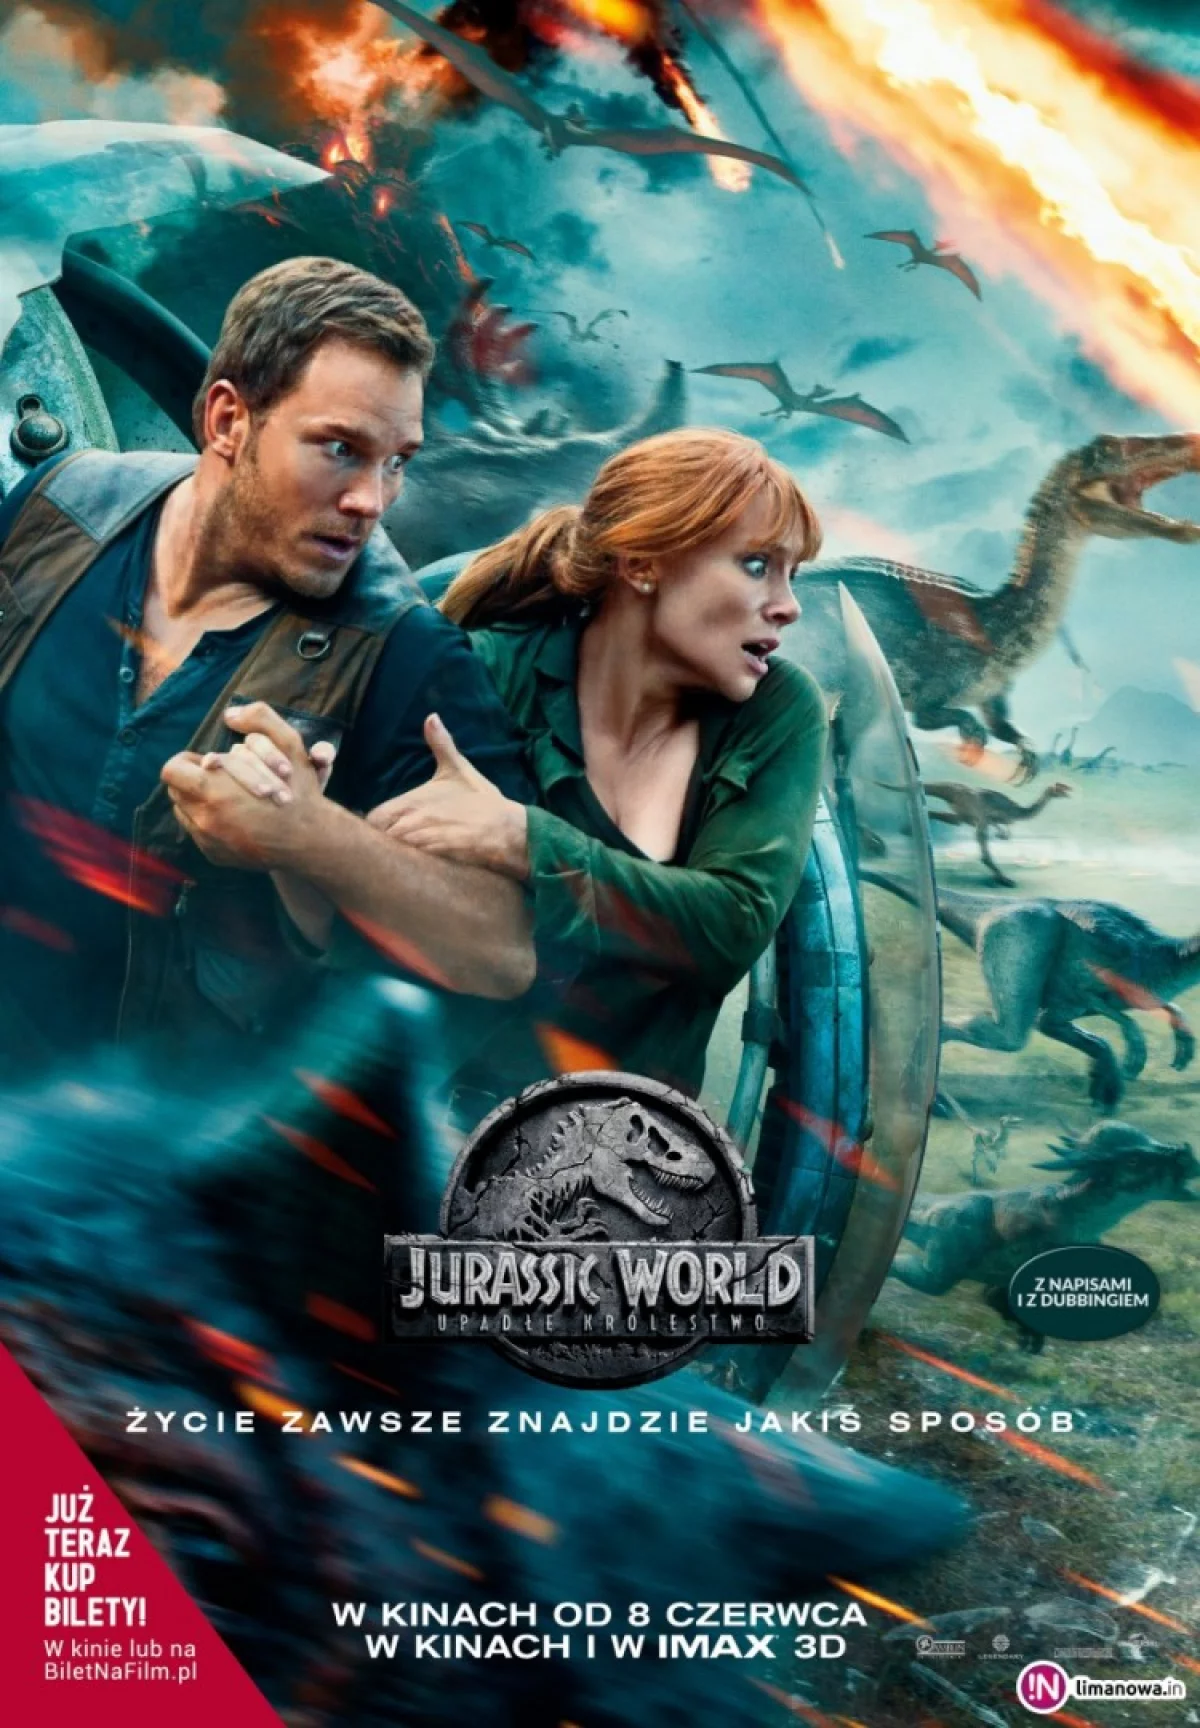 Premiera w kinie Klaps - „Jurassic World: Upadłe królestwo” na ekranie od 8 czerwca!